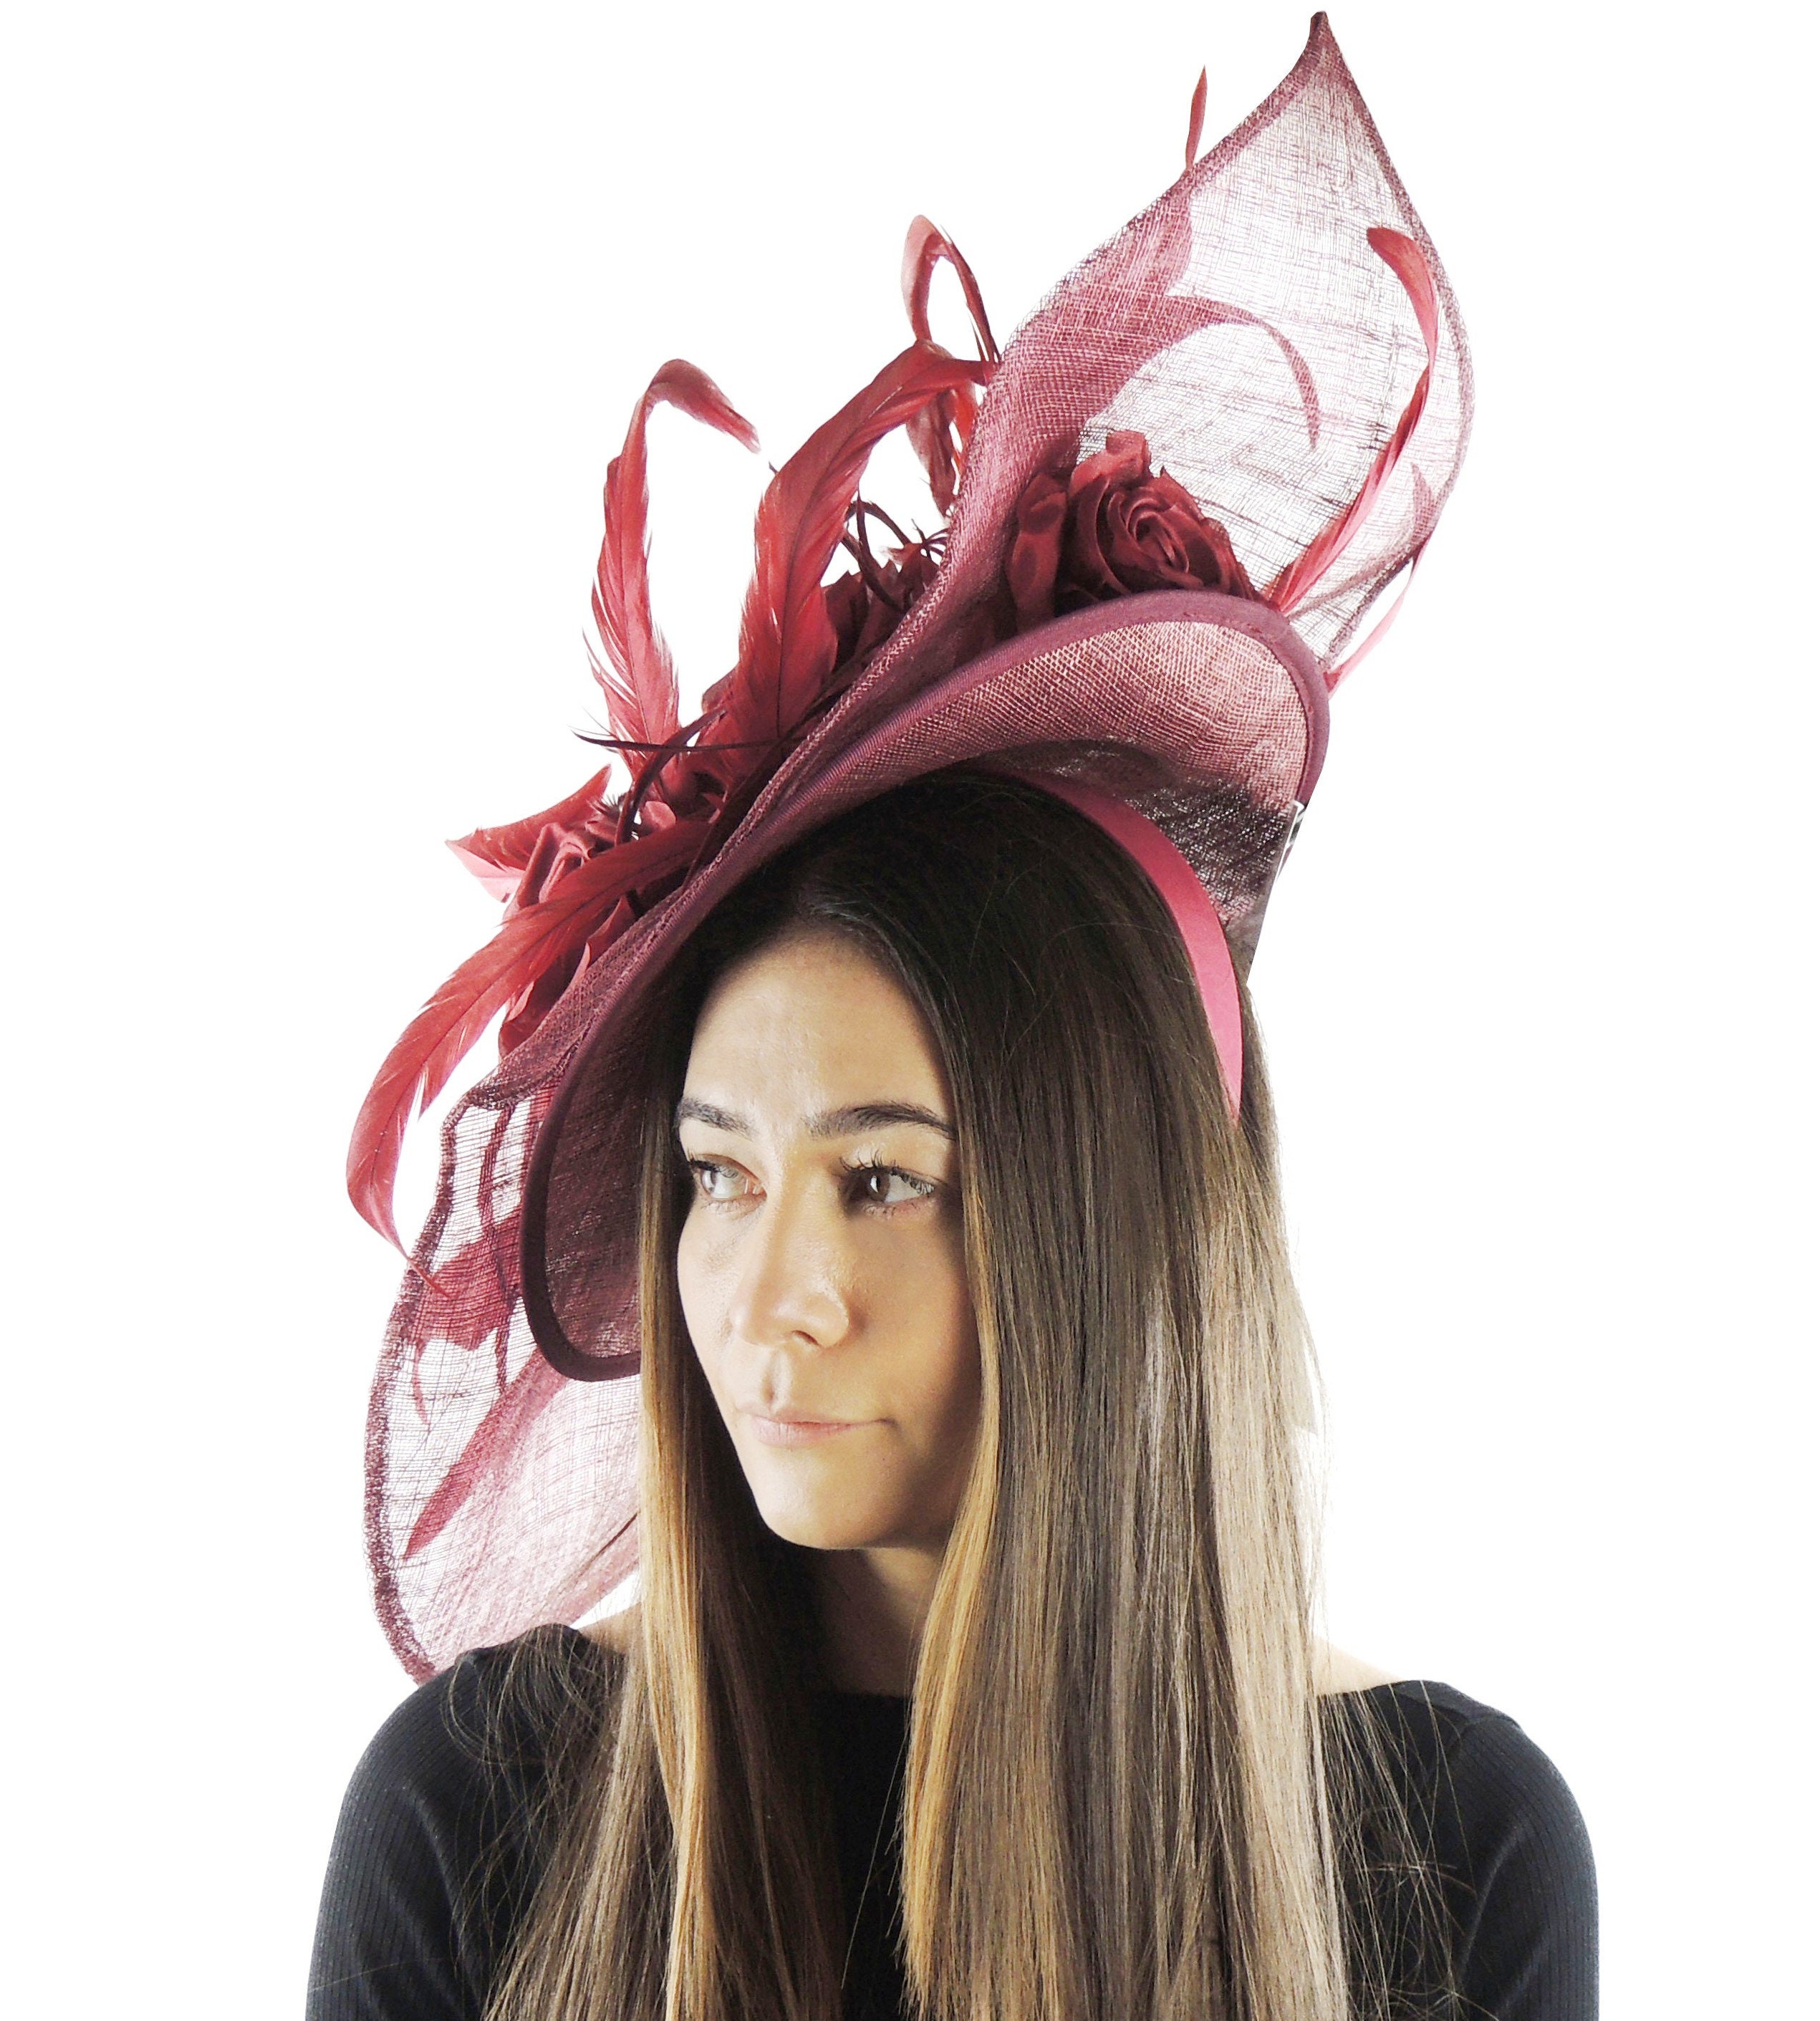 Grand chapeau de fascinateur bourguignon pour mariages - Etsy France